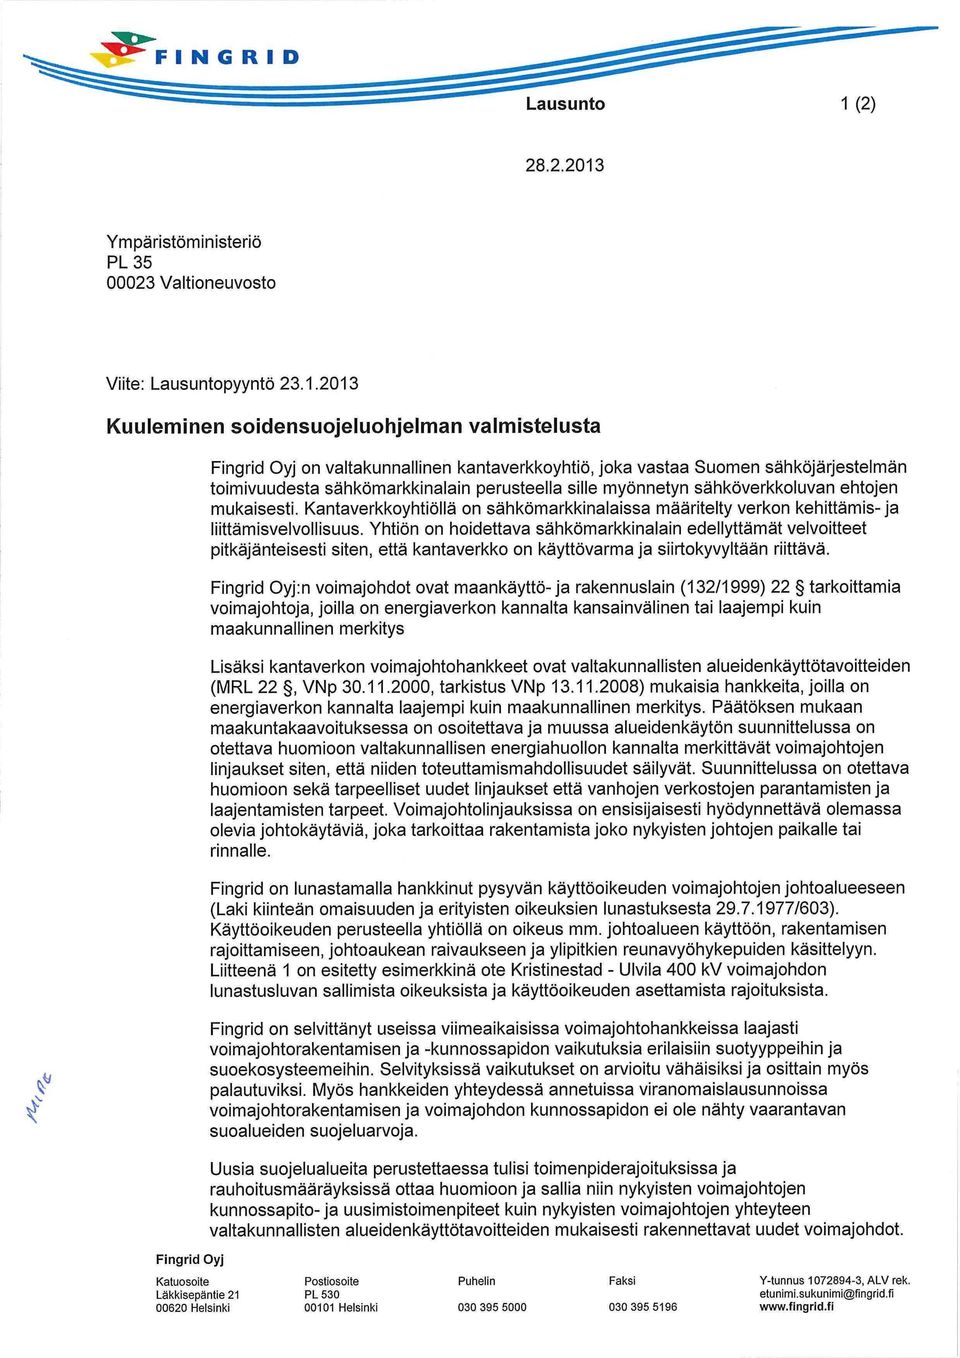 2013 Kuuleminen soidensuojeluohjelman valmistelusta on valtakunnallinen kantaverkkoyhtiö, joka vastaa Suomen sähköjärjestelmän toimivuudesta sähkömarkkinalain perusteella sille myönnetyn